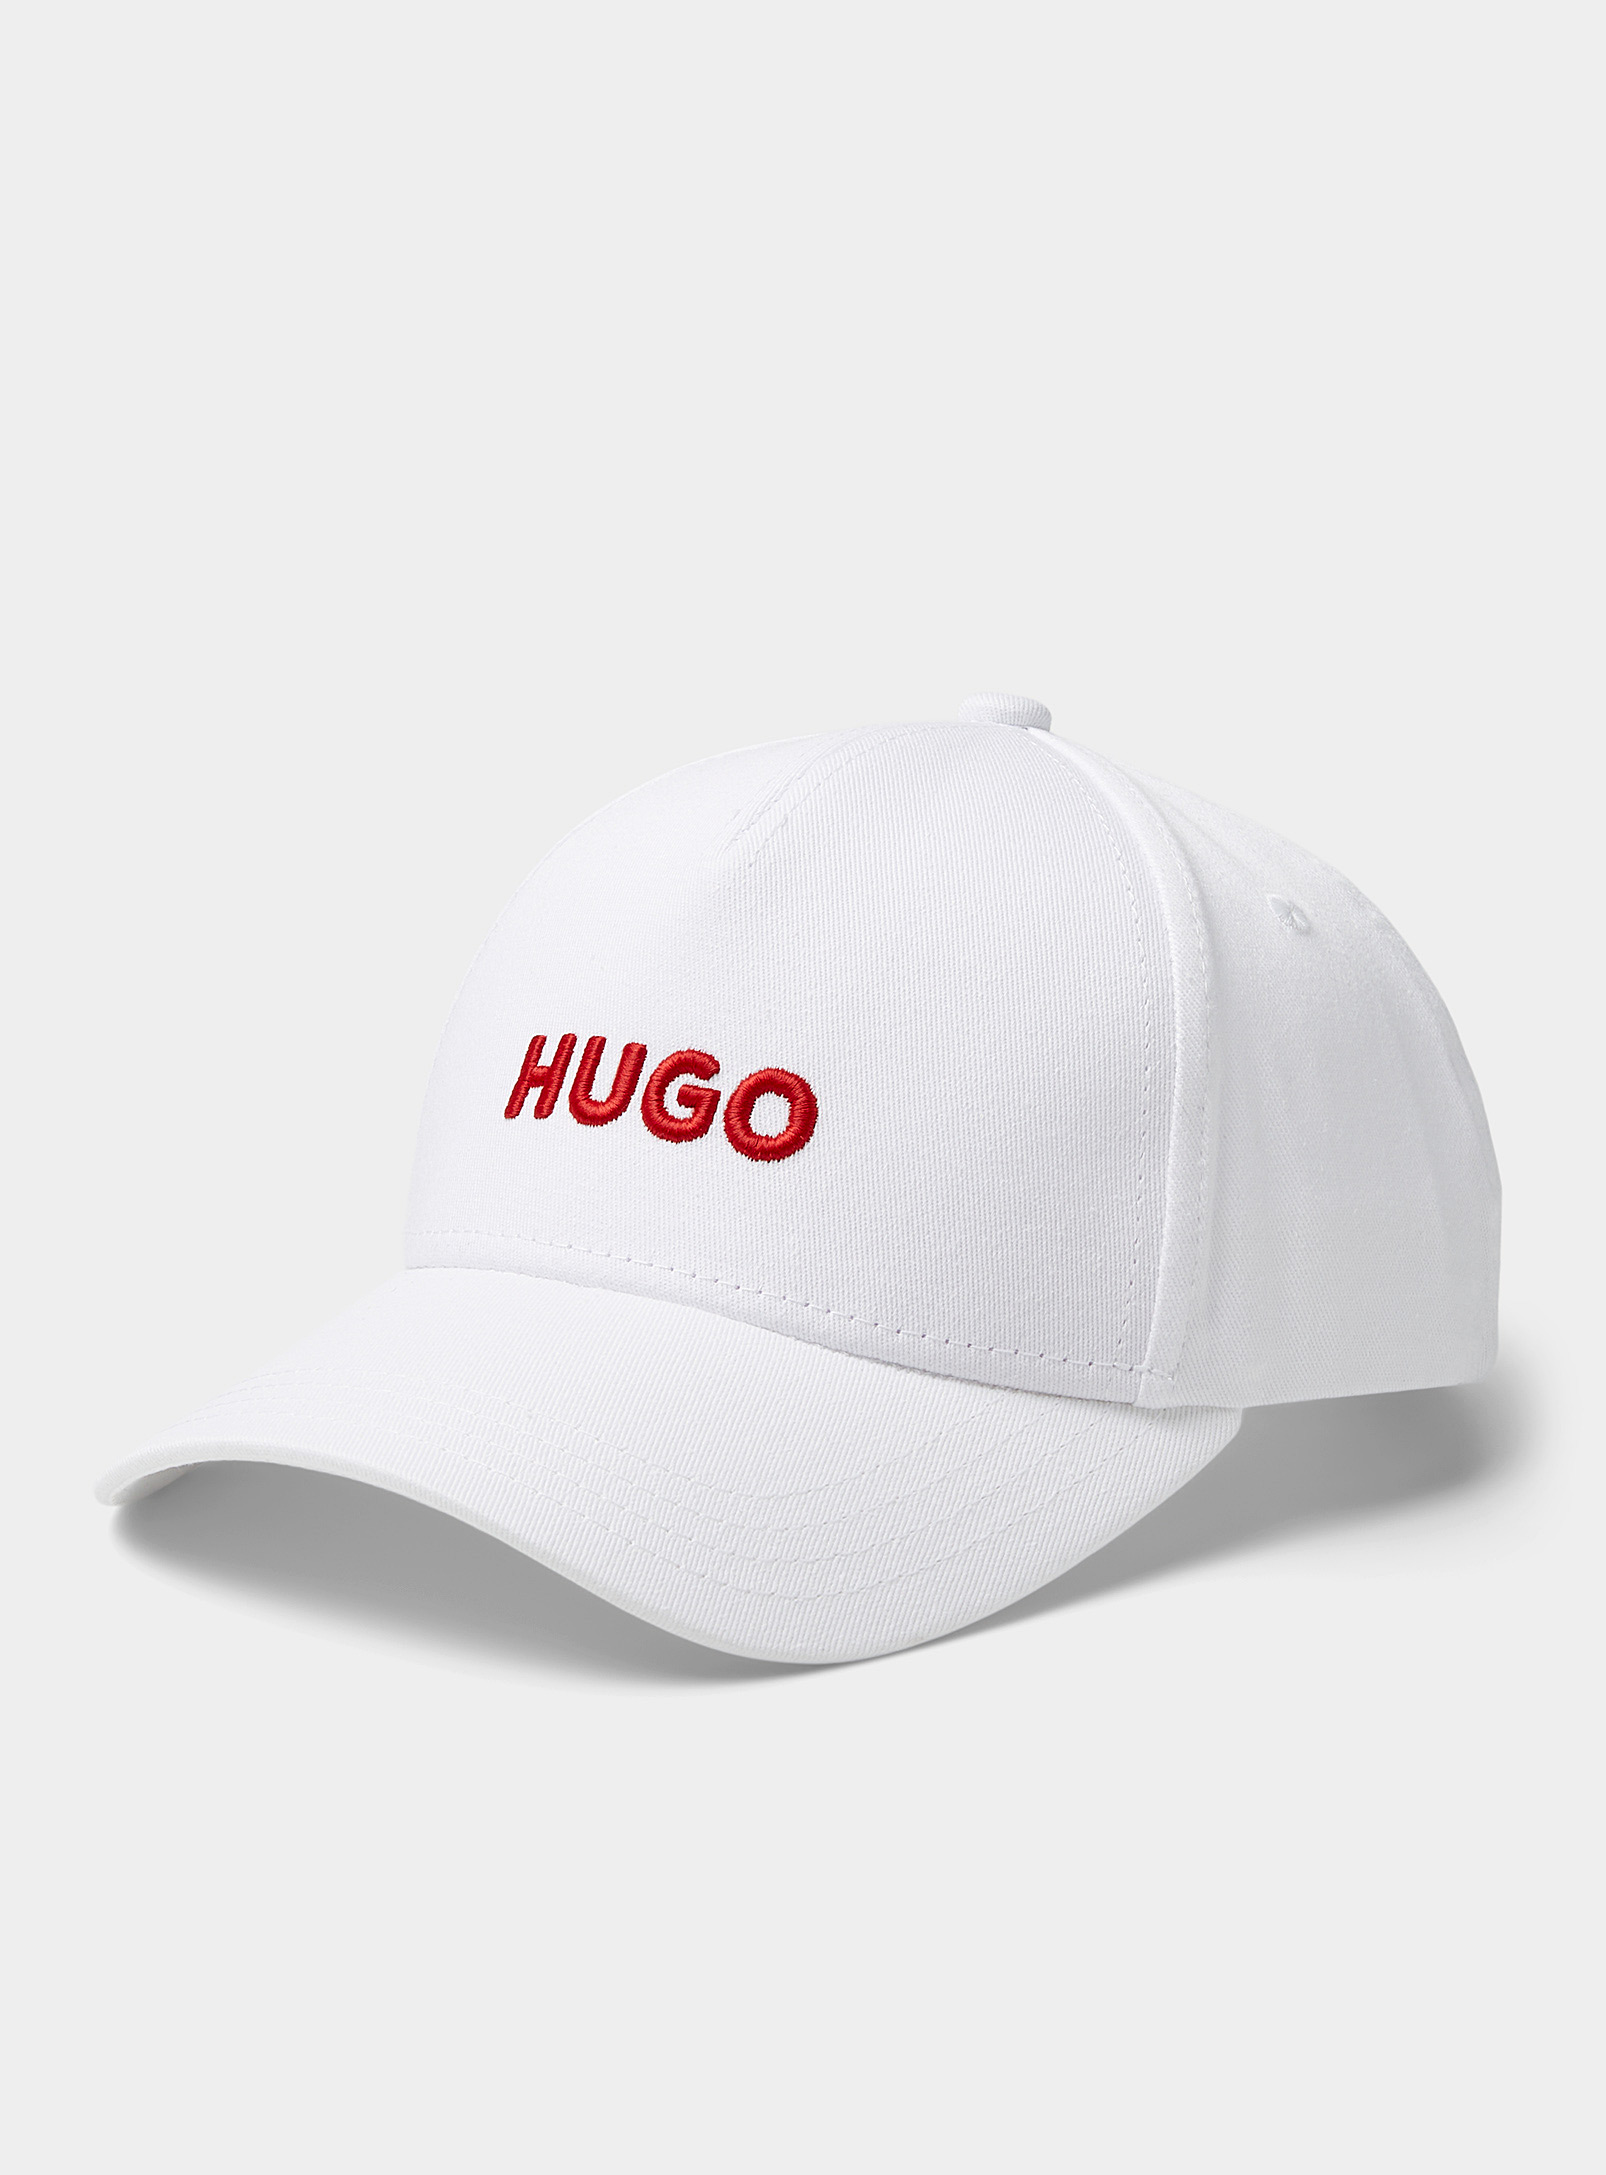 HUGO - Men's Red-logo white cap